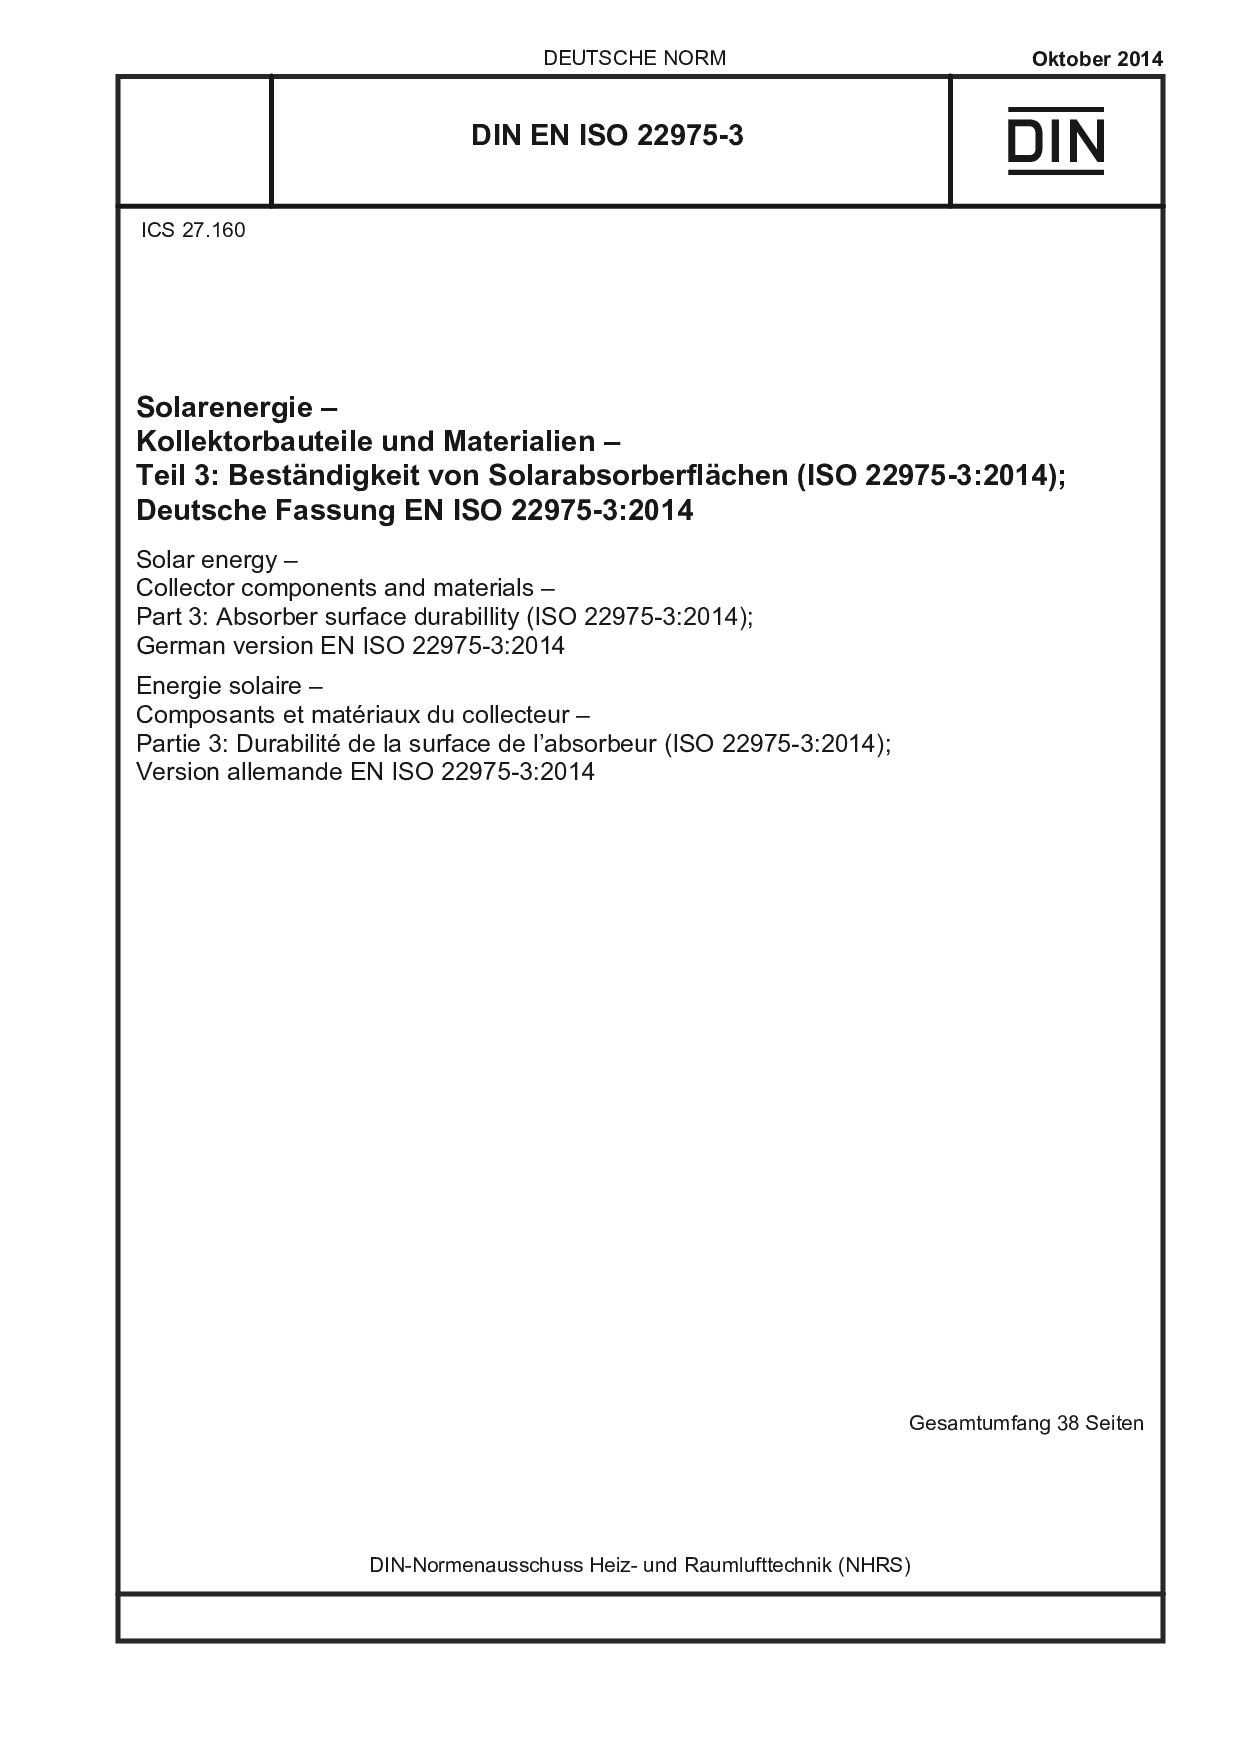 DIN EN ISO 22975-3:2014封面图